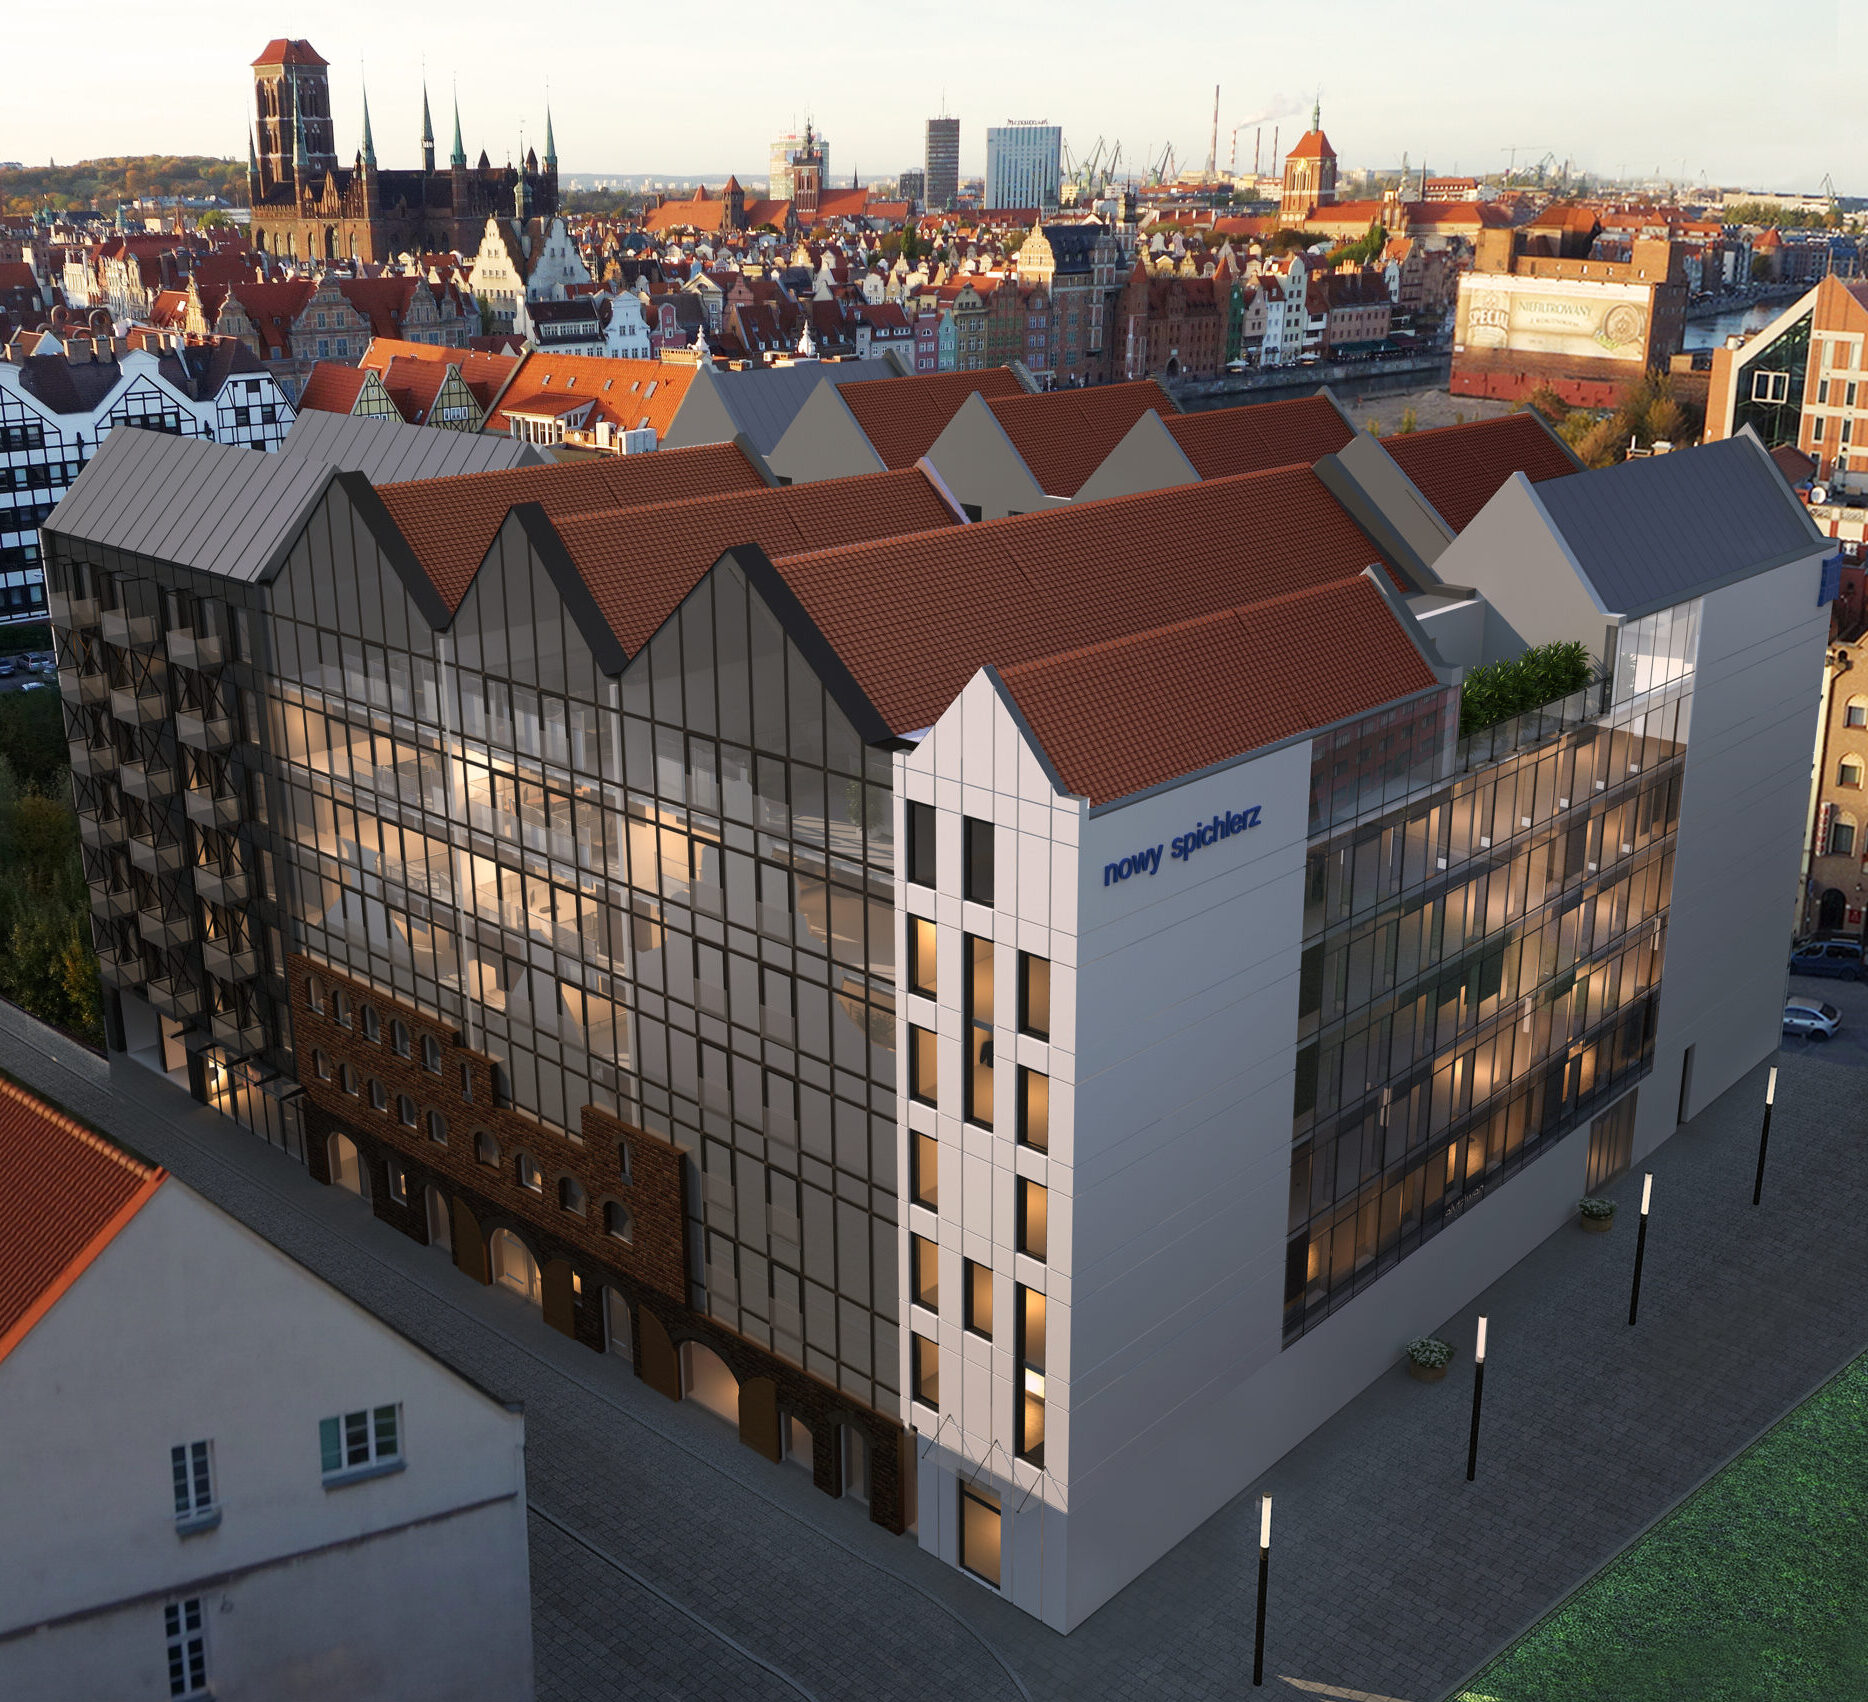 Nowy-Spichlerz-inwestycja-mieszkaniowa-usulugowa-hotelowa-Gdansk.